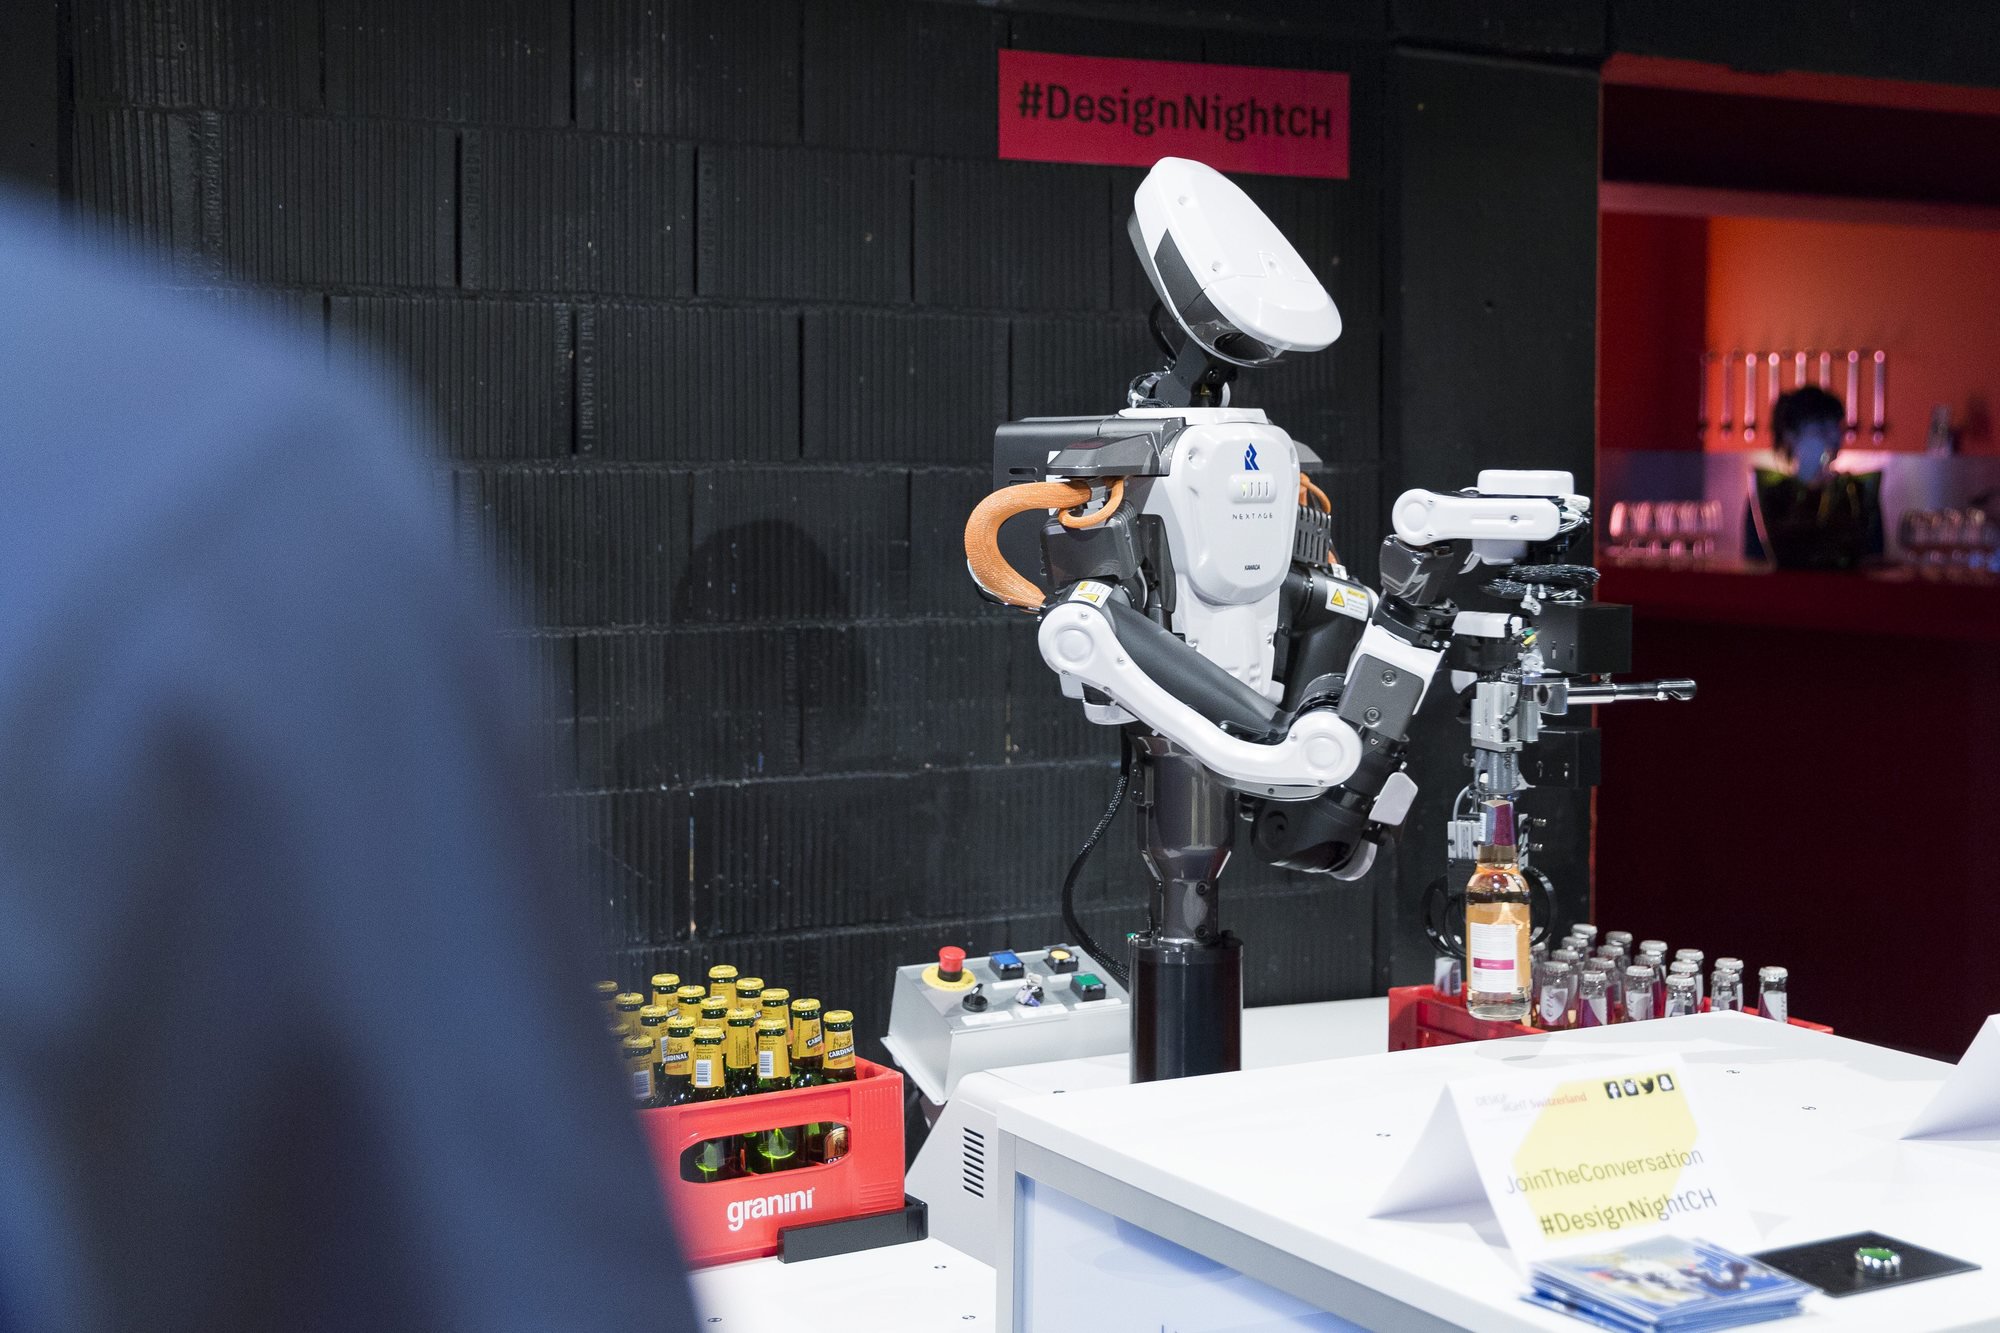 Un robot décapsule une bouteille de bière lors de la première édition en Suisse de la "Design Night". C'était à l'occasion du 25me anniversaire d'Autodesk en Suisse, le 20 octobre 2016 à Neuchâtel.